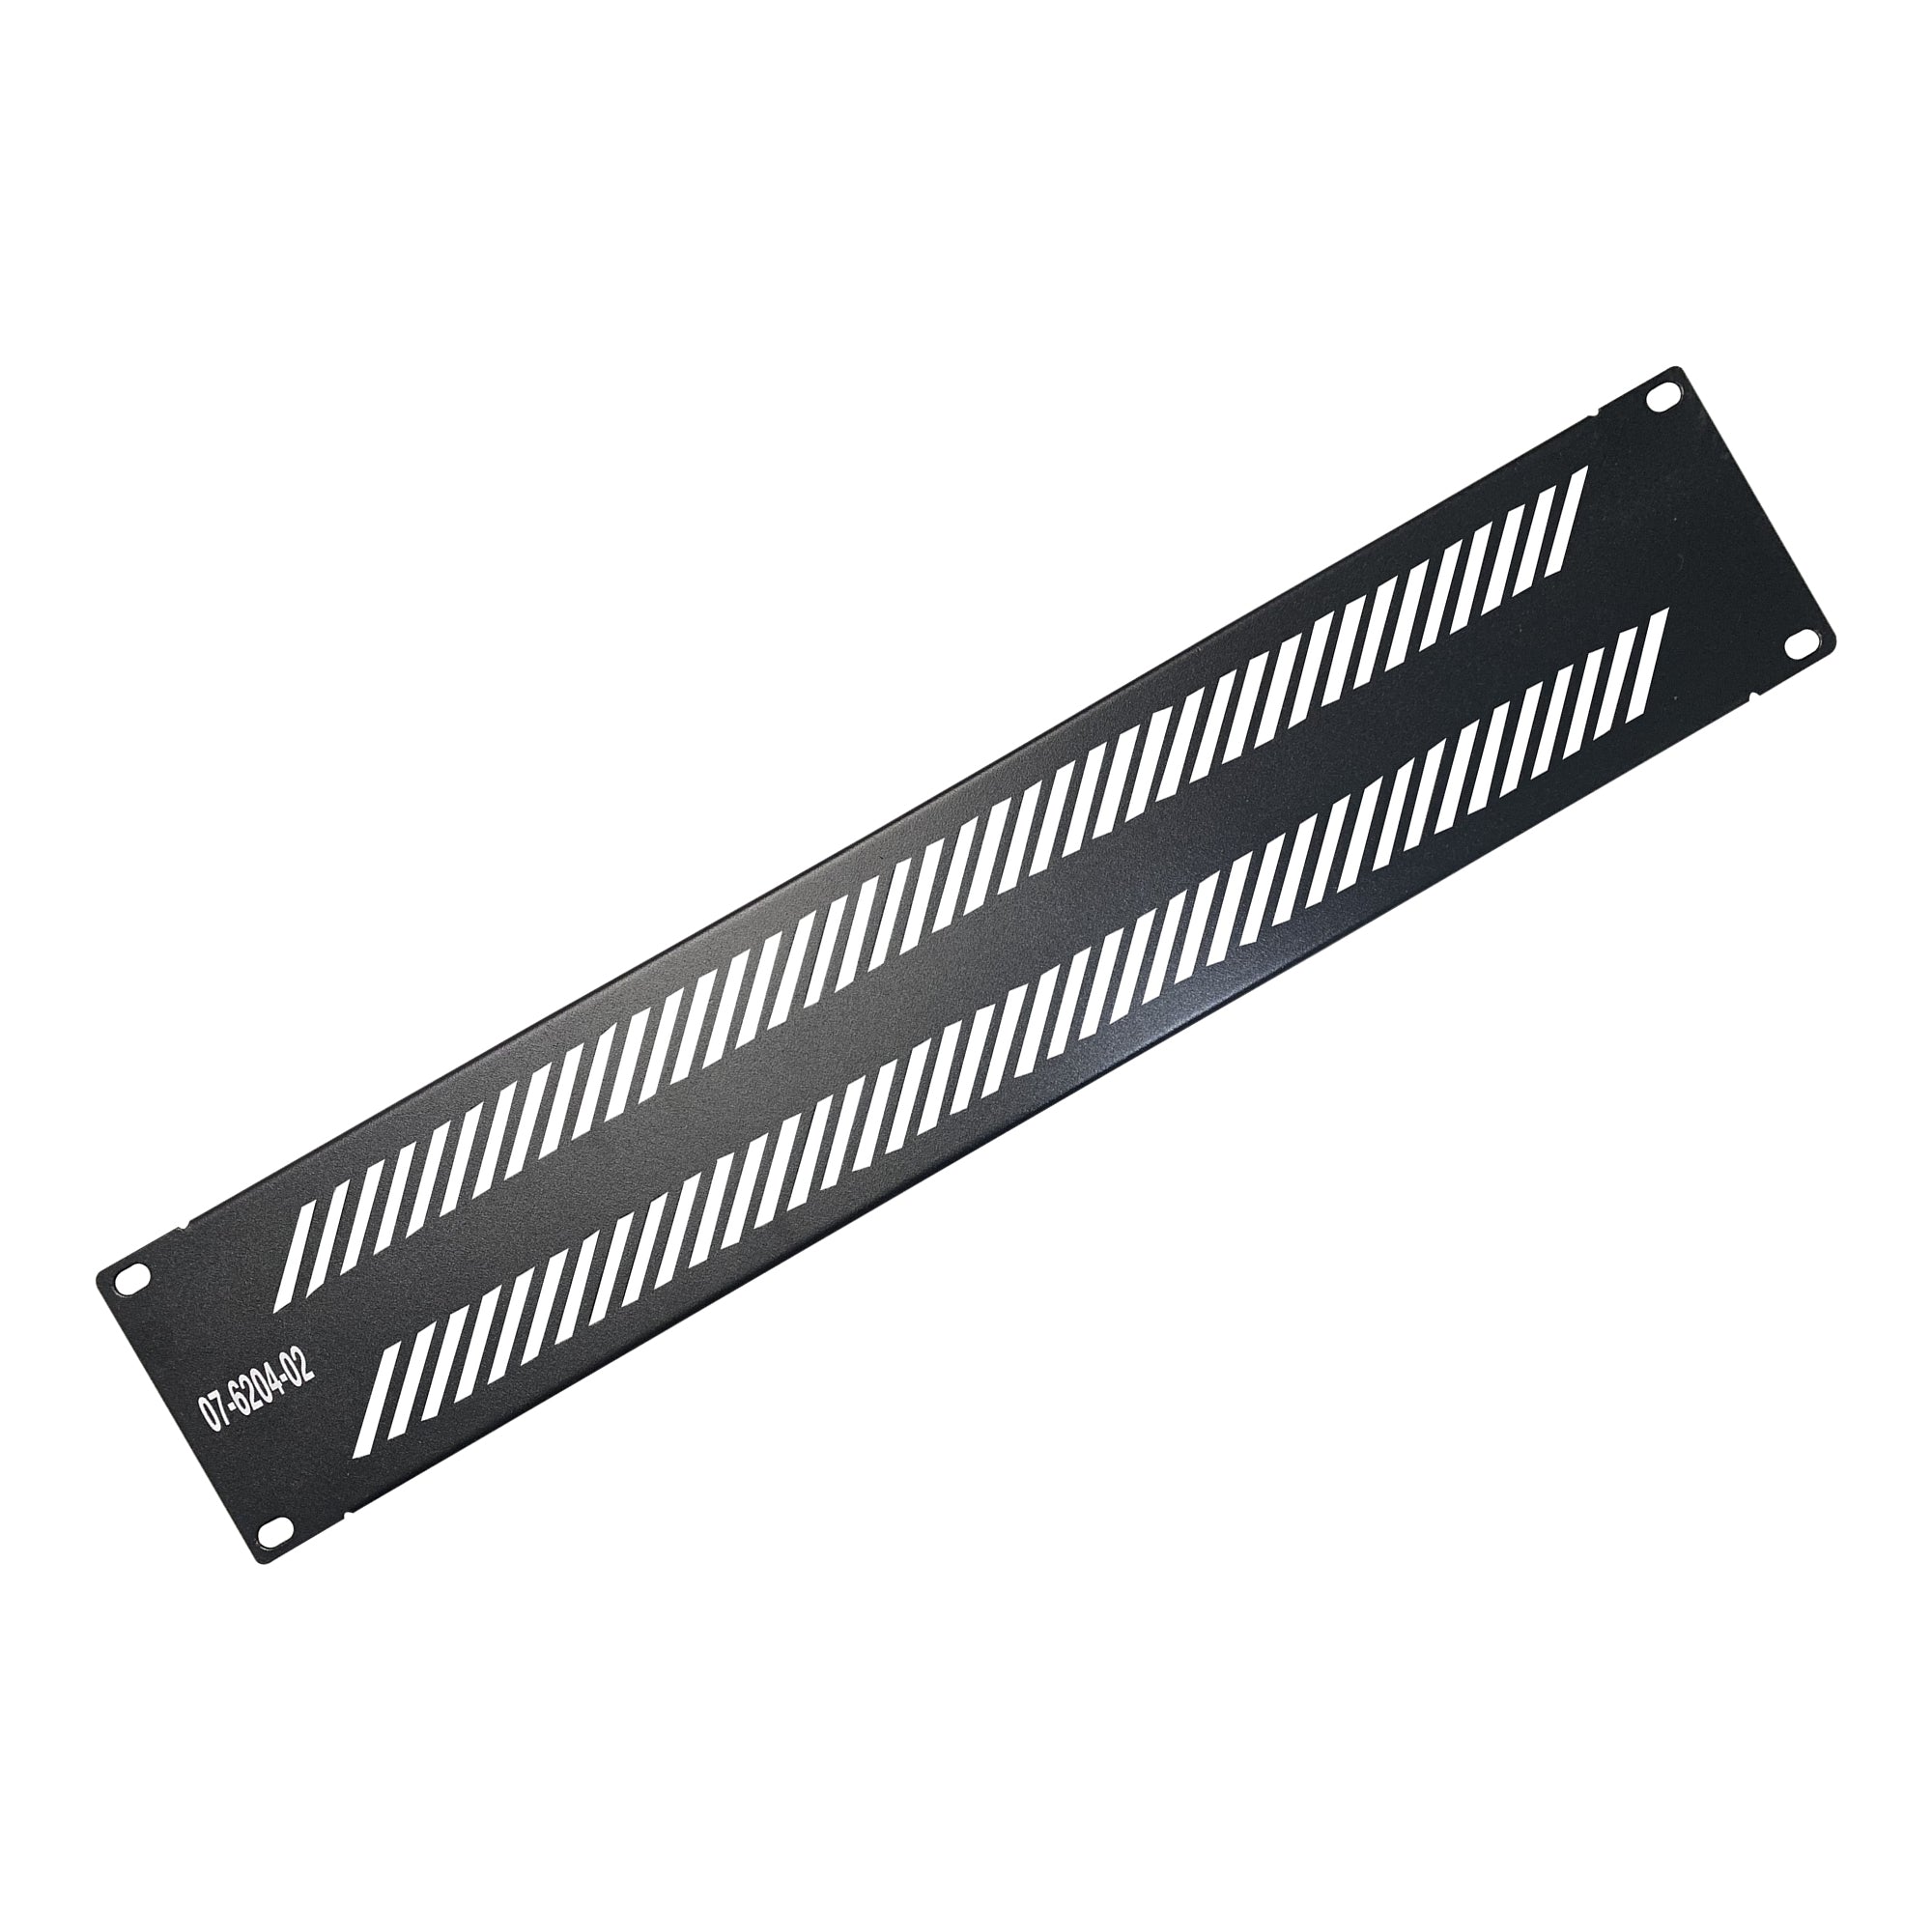 07-6204-02 Blank Filler Panel with Ventilation - 2U - Black Color